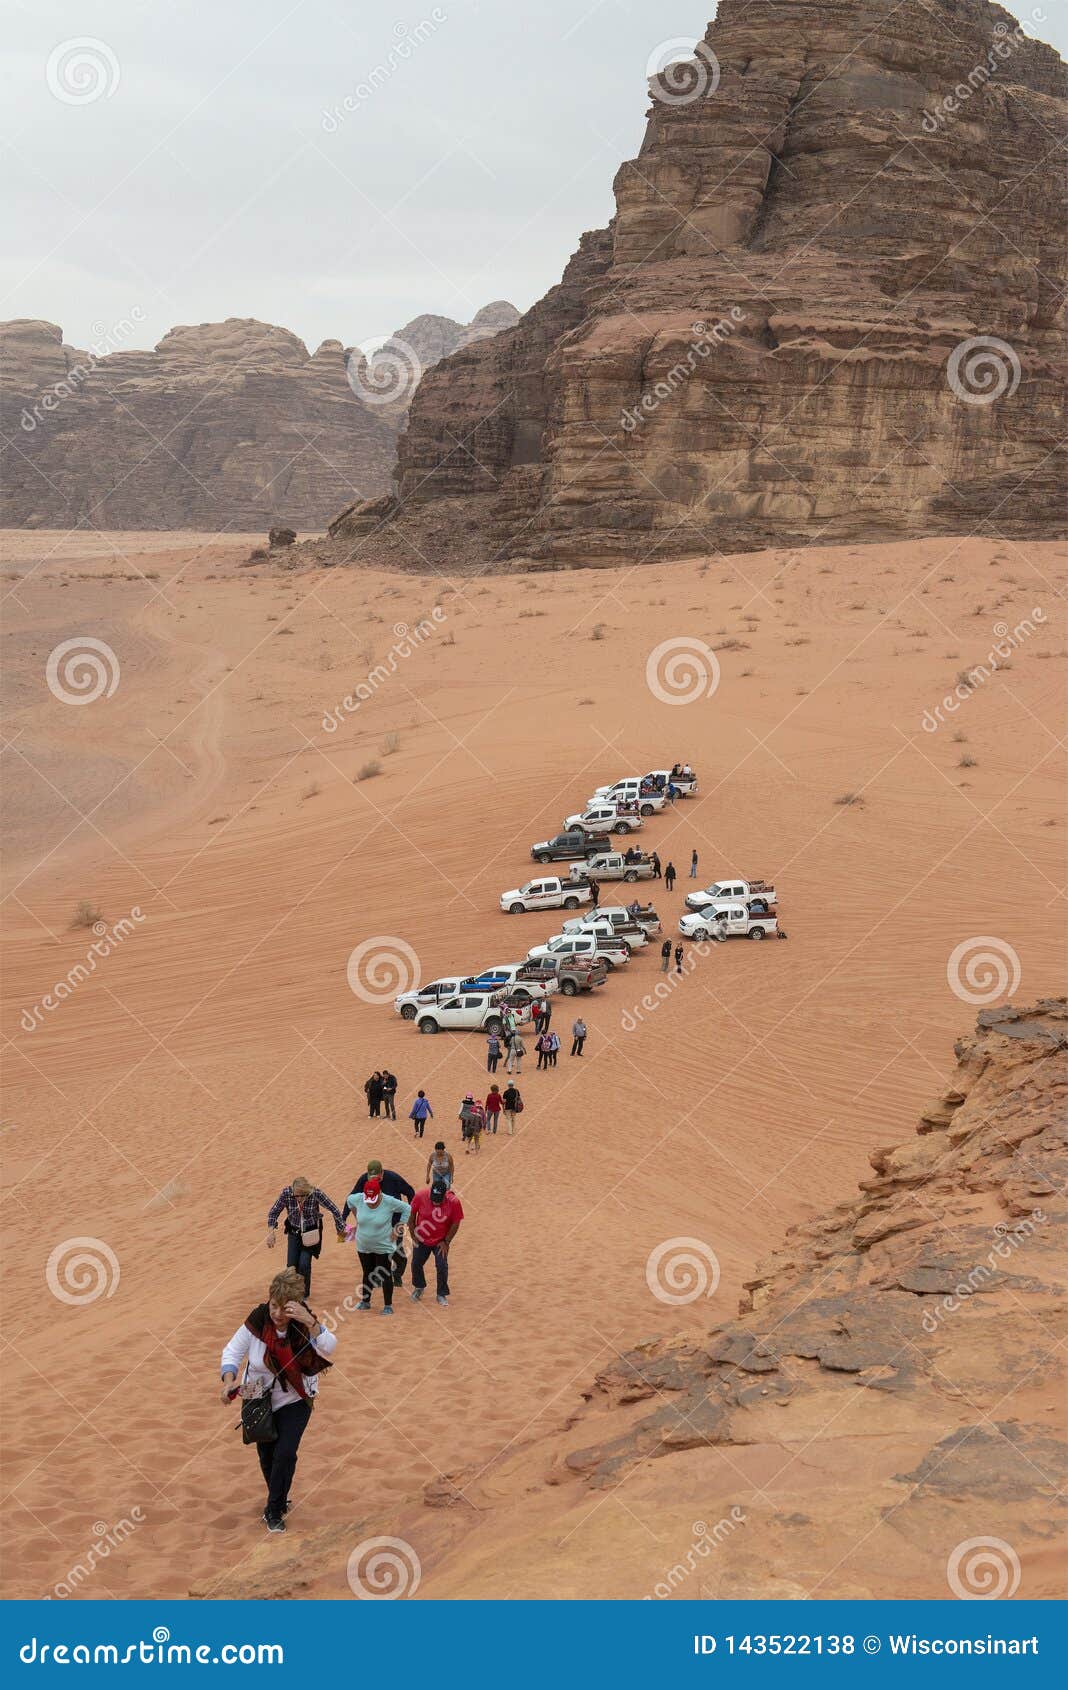 Wadi Run Desert, Jordan Travel, Nature Editorial Stock Photo of nature, jordan: 143522138